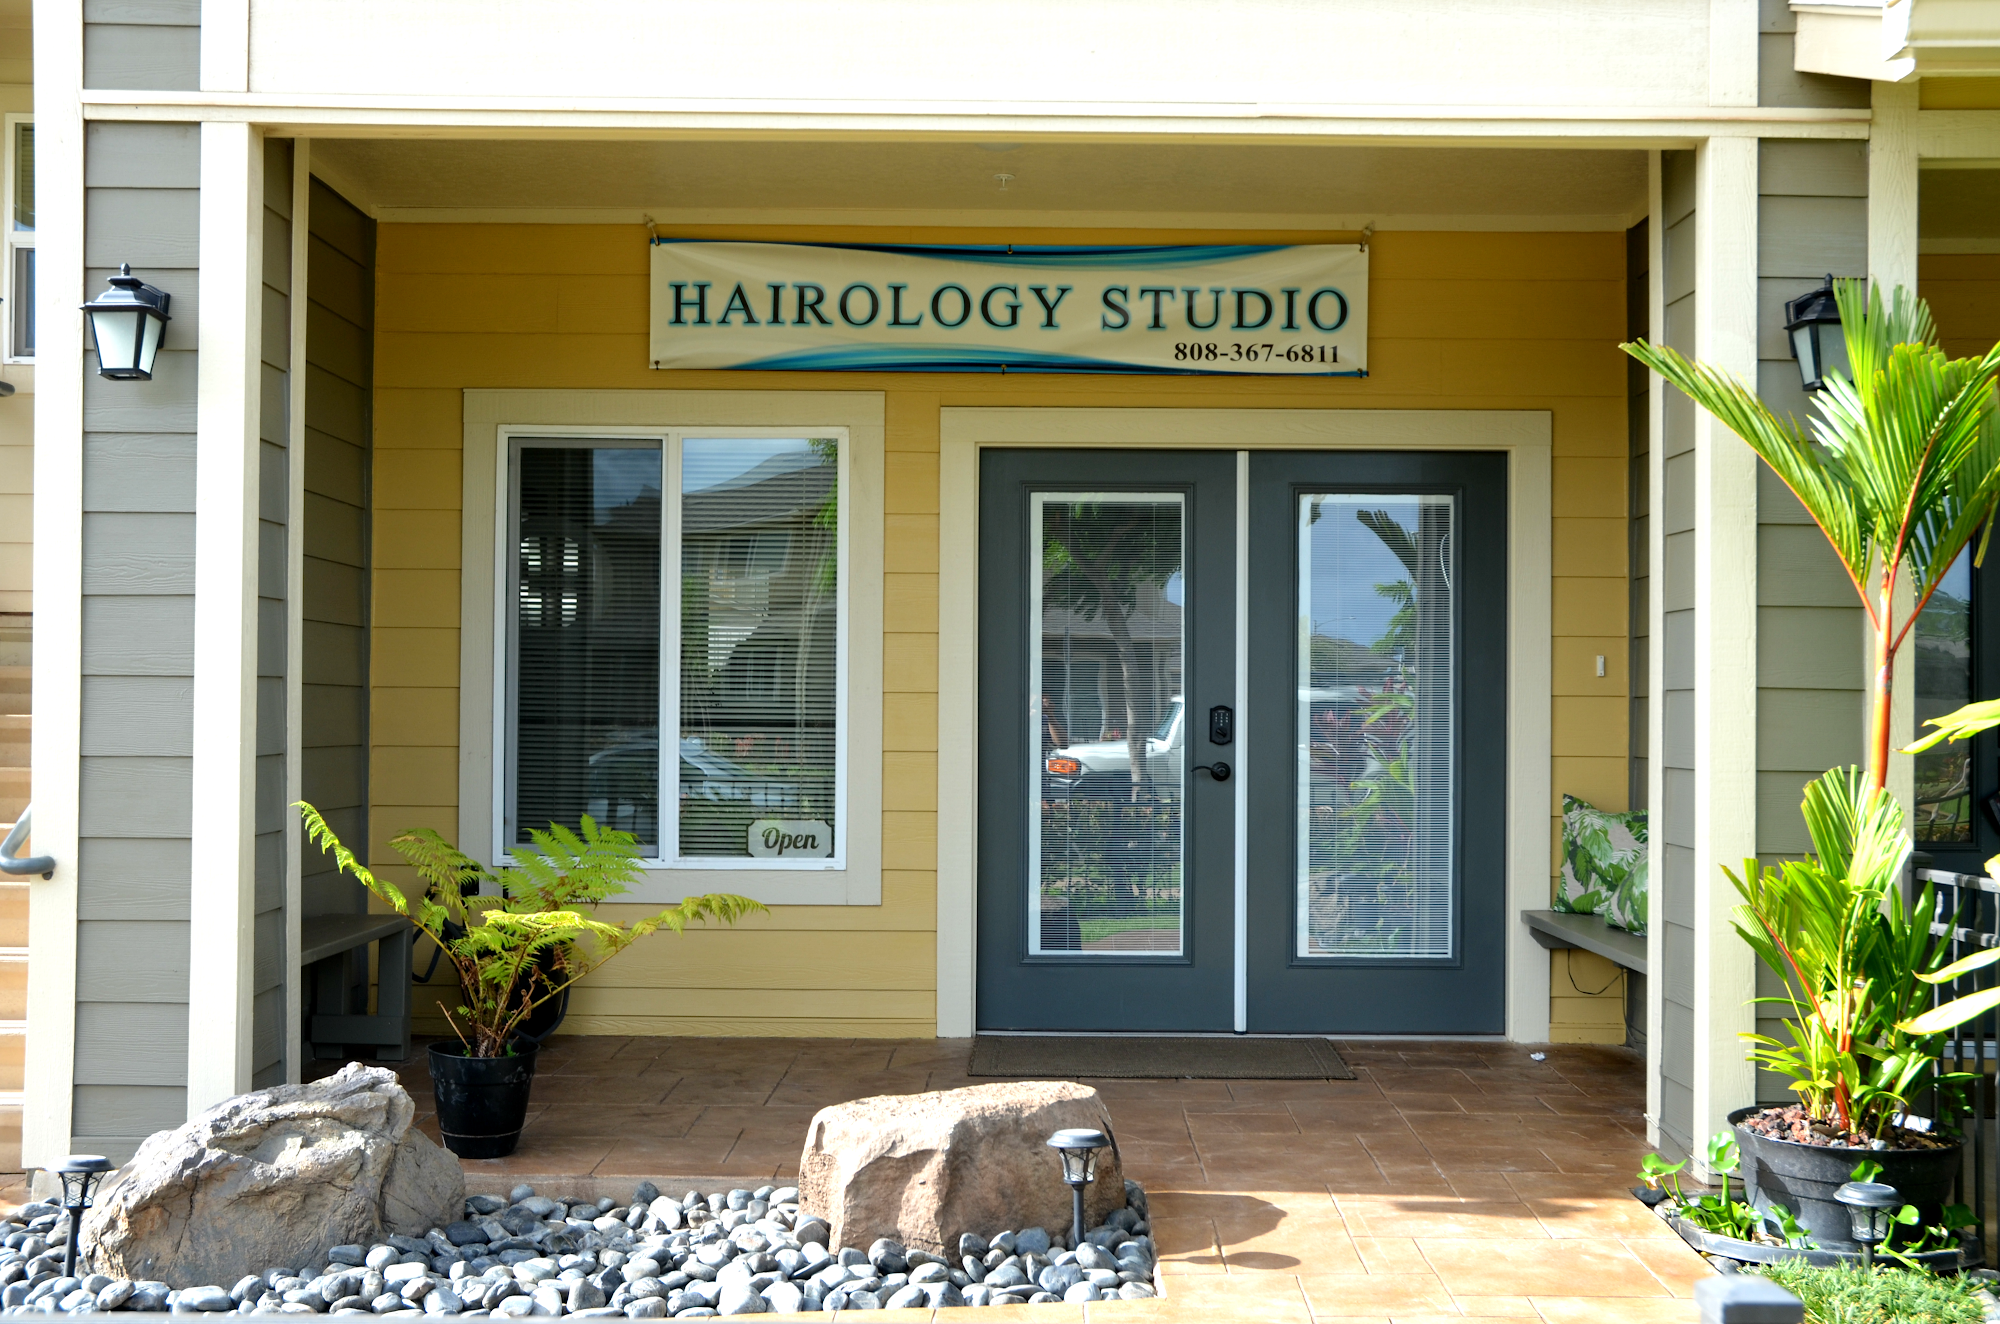 Hairology Studio